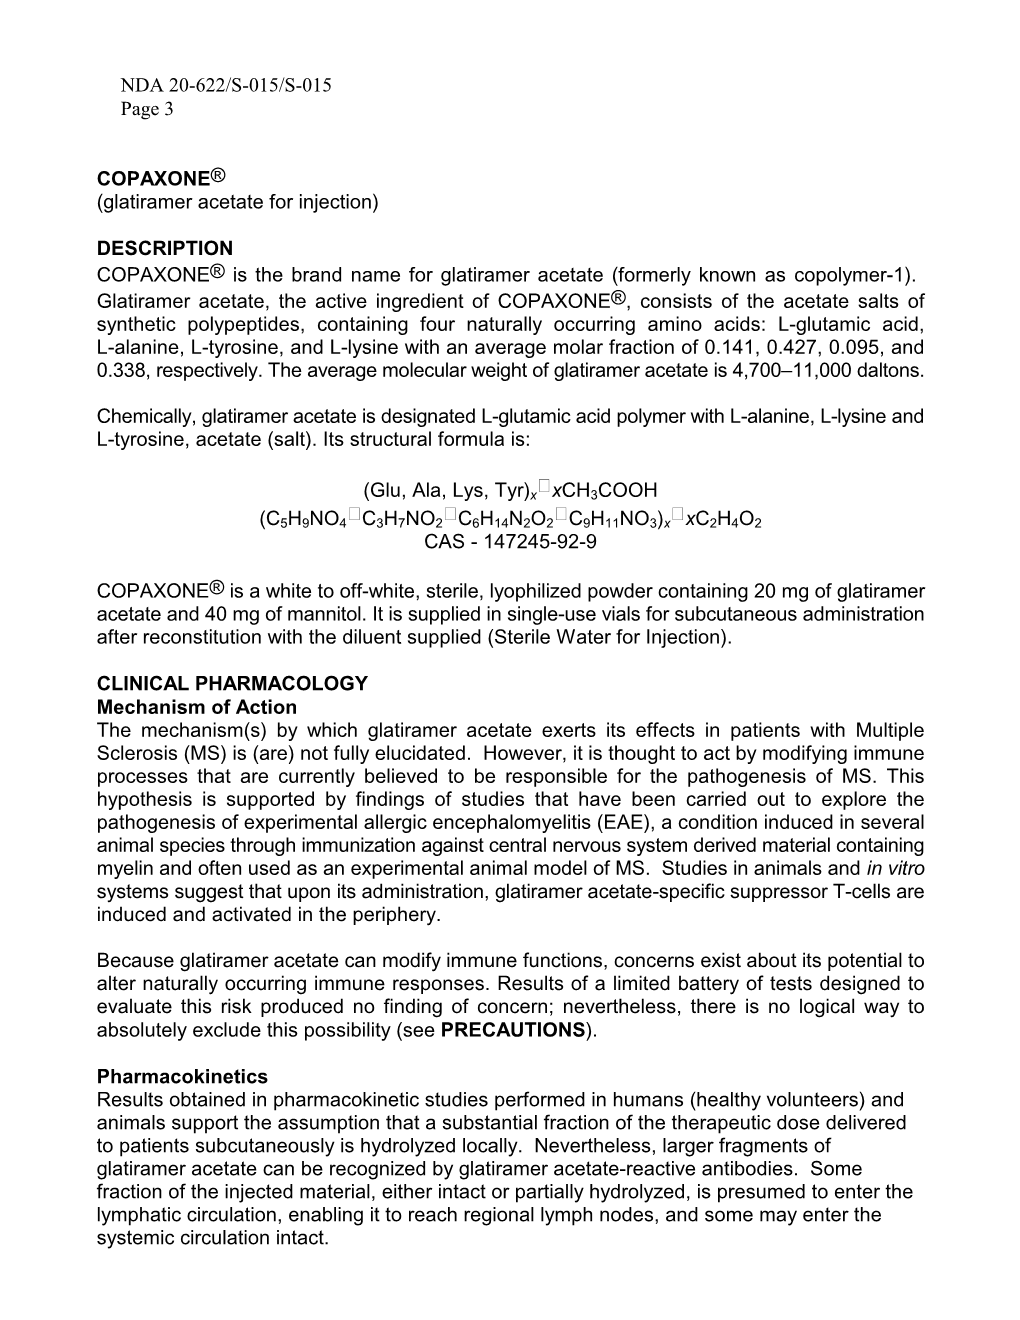 NDA 20-622/S-015/S-015 Page 3 COPAXONE® (Glatiramer Acetate